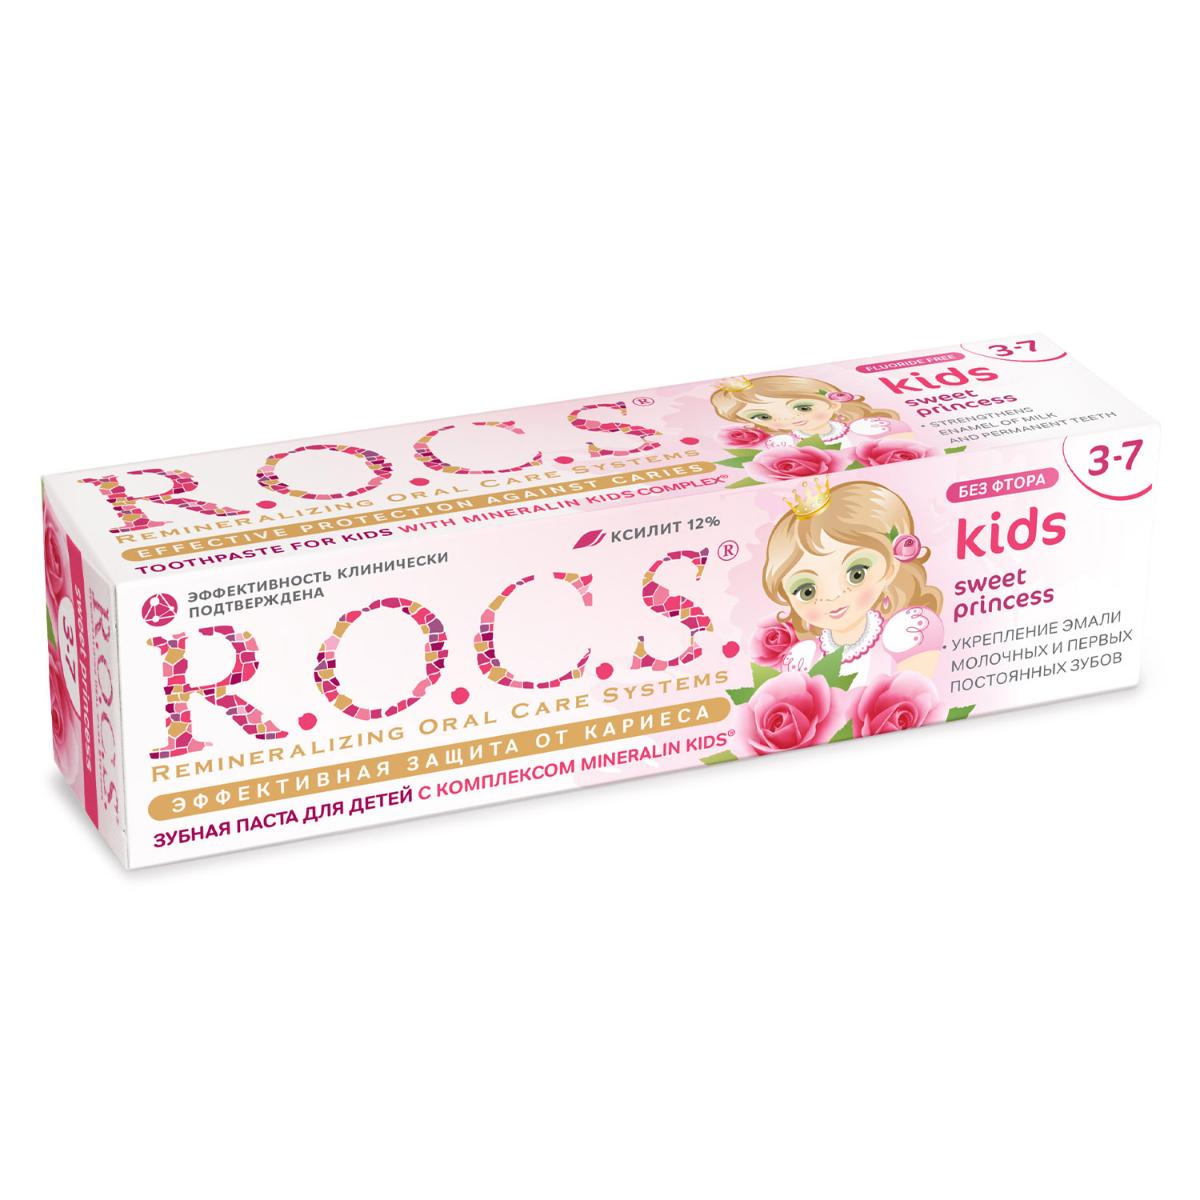 Зубная паста R.O.C.S. Kids Sweet Prinсess от 3 до 7 лет с ароматом розы 45г